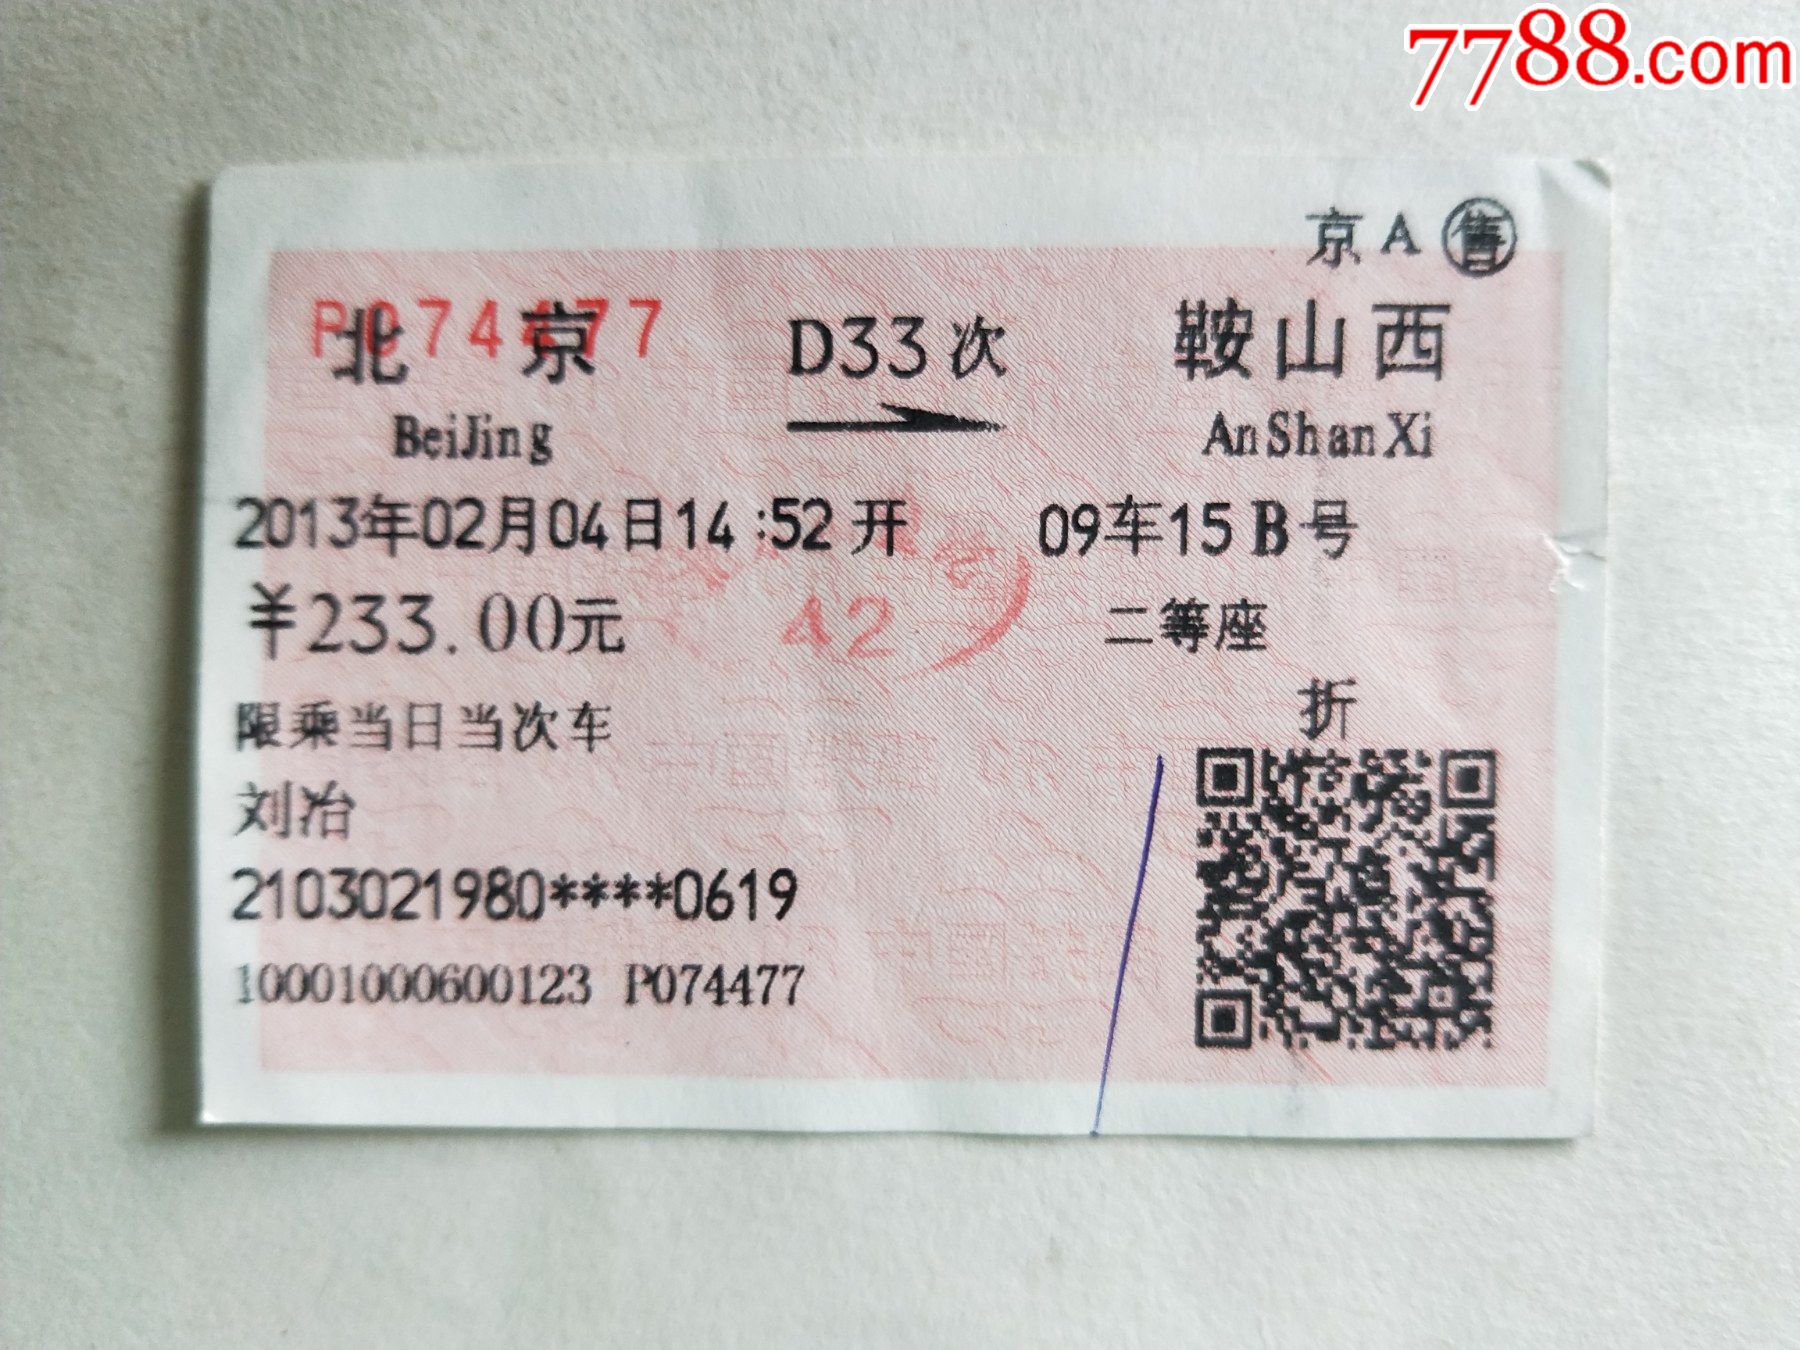 北京 江苏火车票多少钱 北京到江苏的高铁票价多少钱